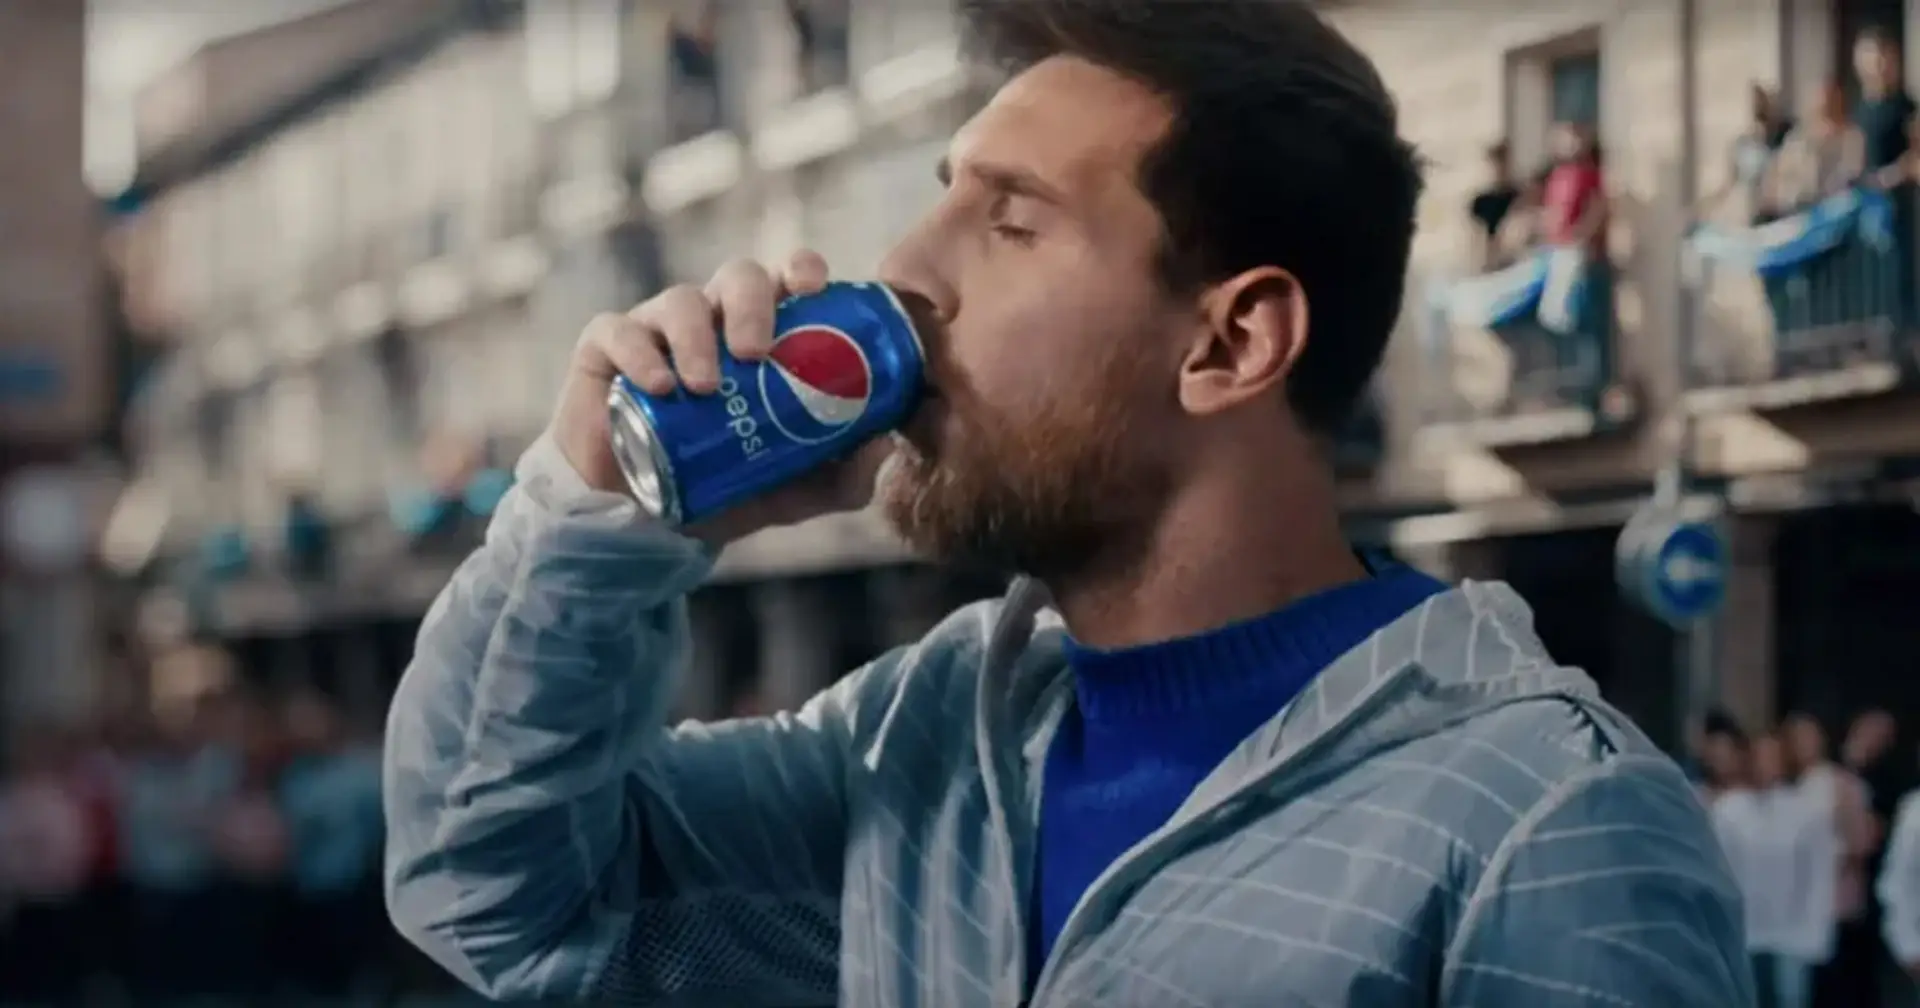 Leo Messi hace publicidad a Pepsi pero ¿debería beberlo? Explicamos como los refrescos afectan a los futbolistas